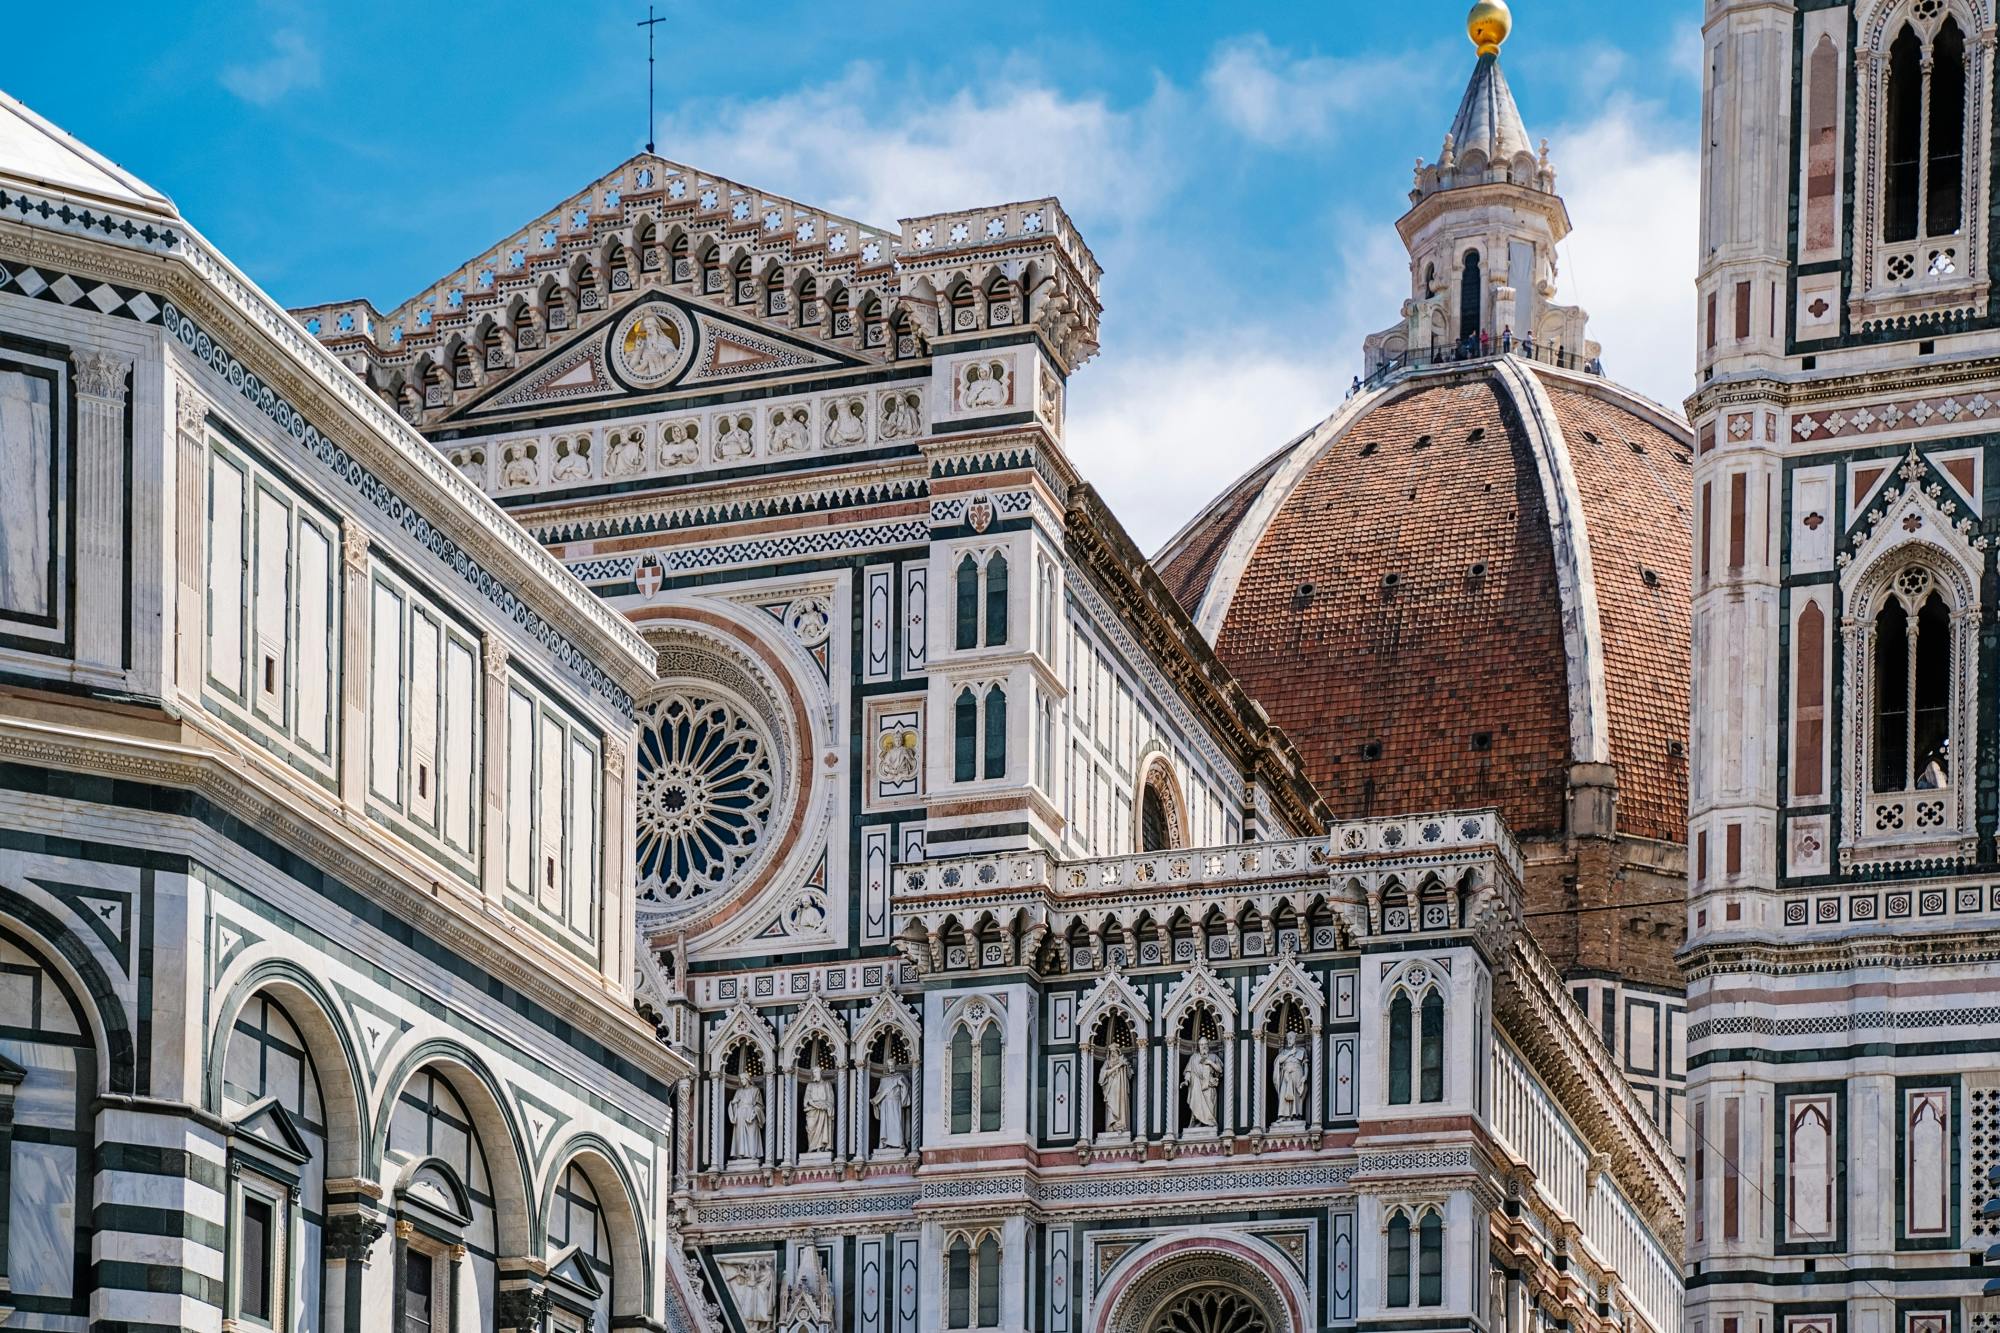 Visite guidée à pied du cœur de Florence avec audioguide inclus